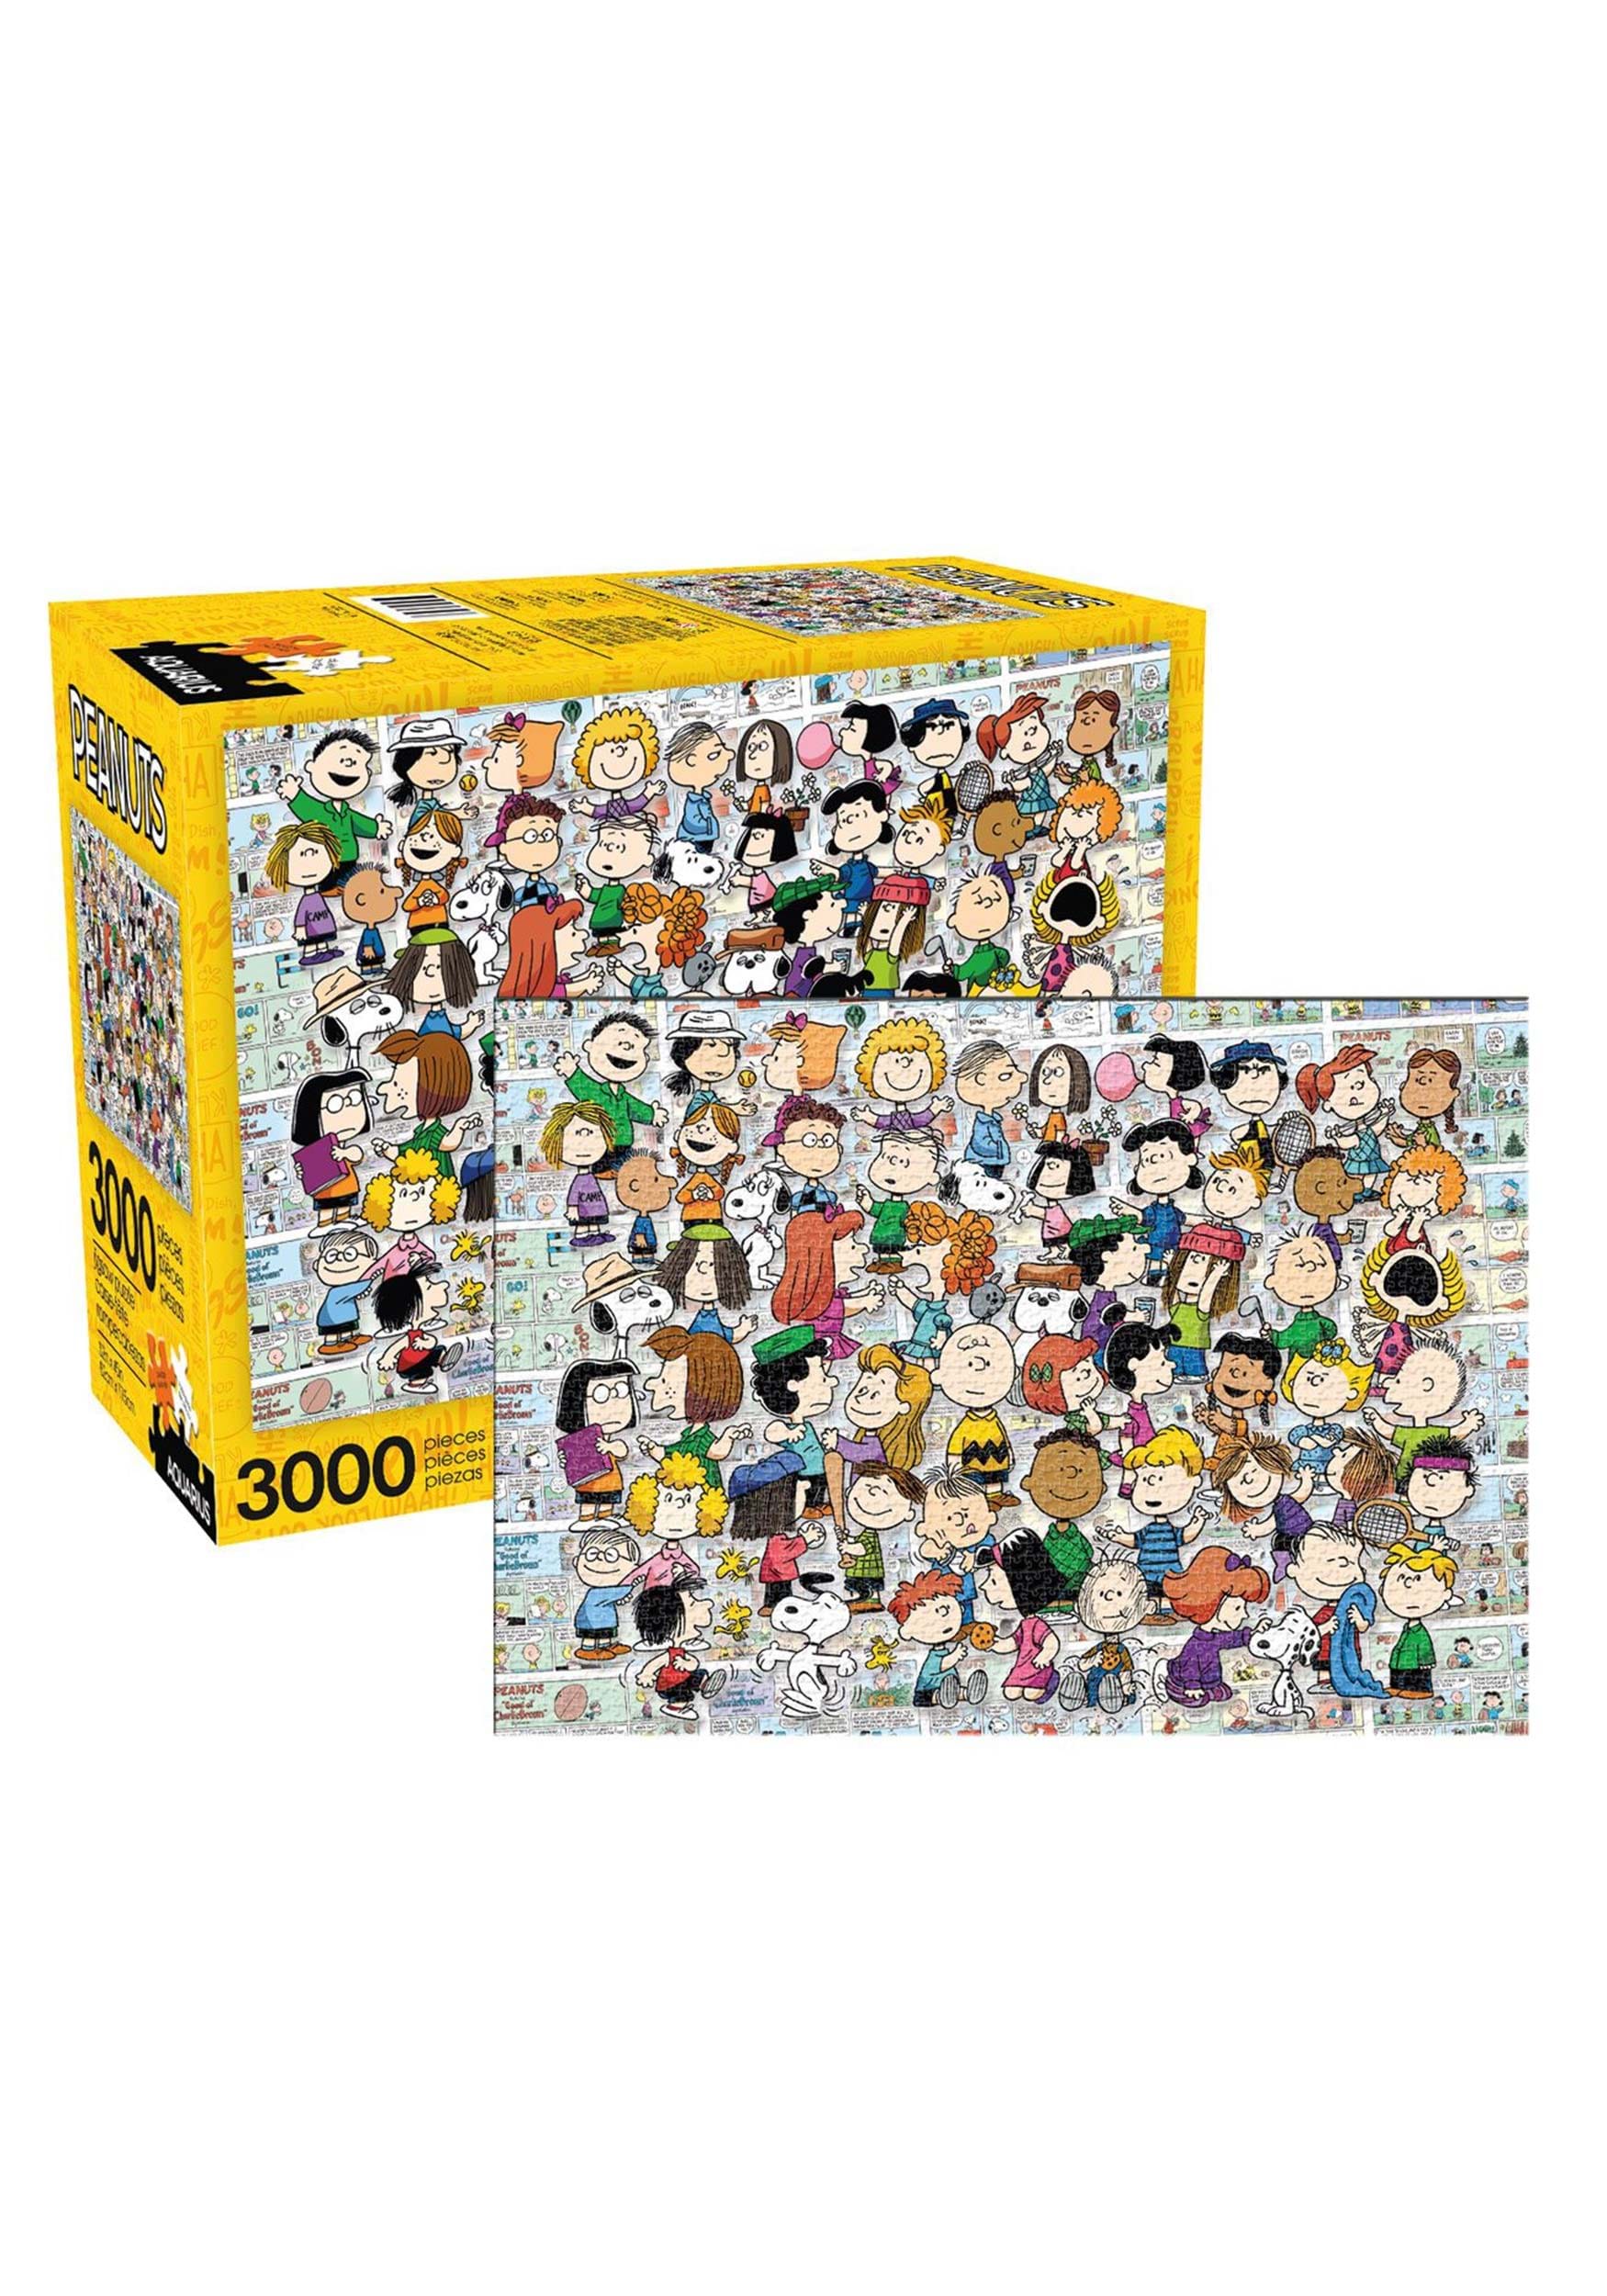 3000pc Peanuts Cast Jigsaw Puzzle